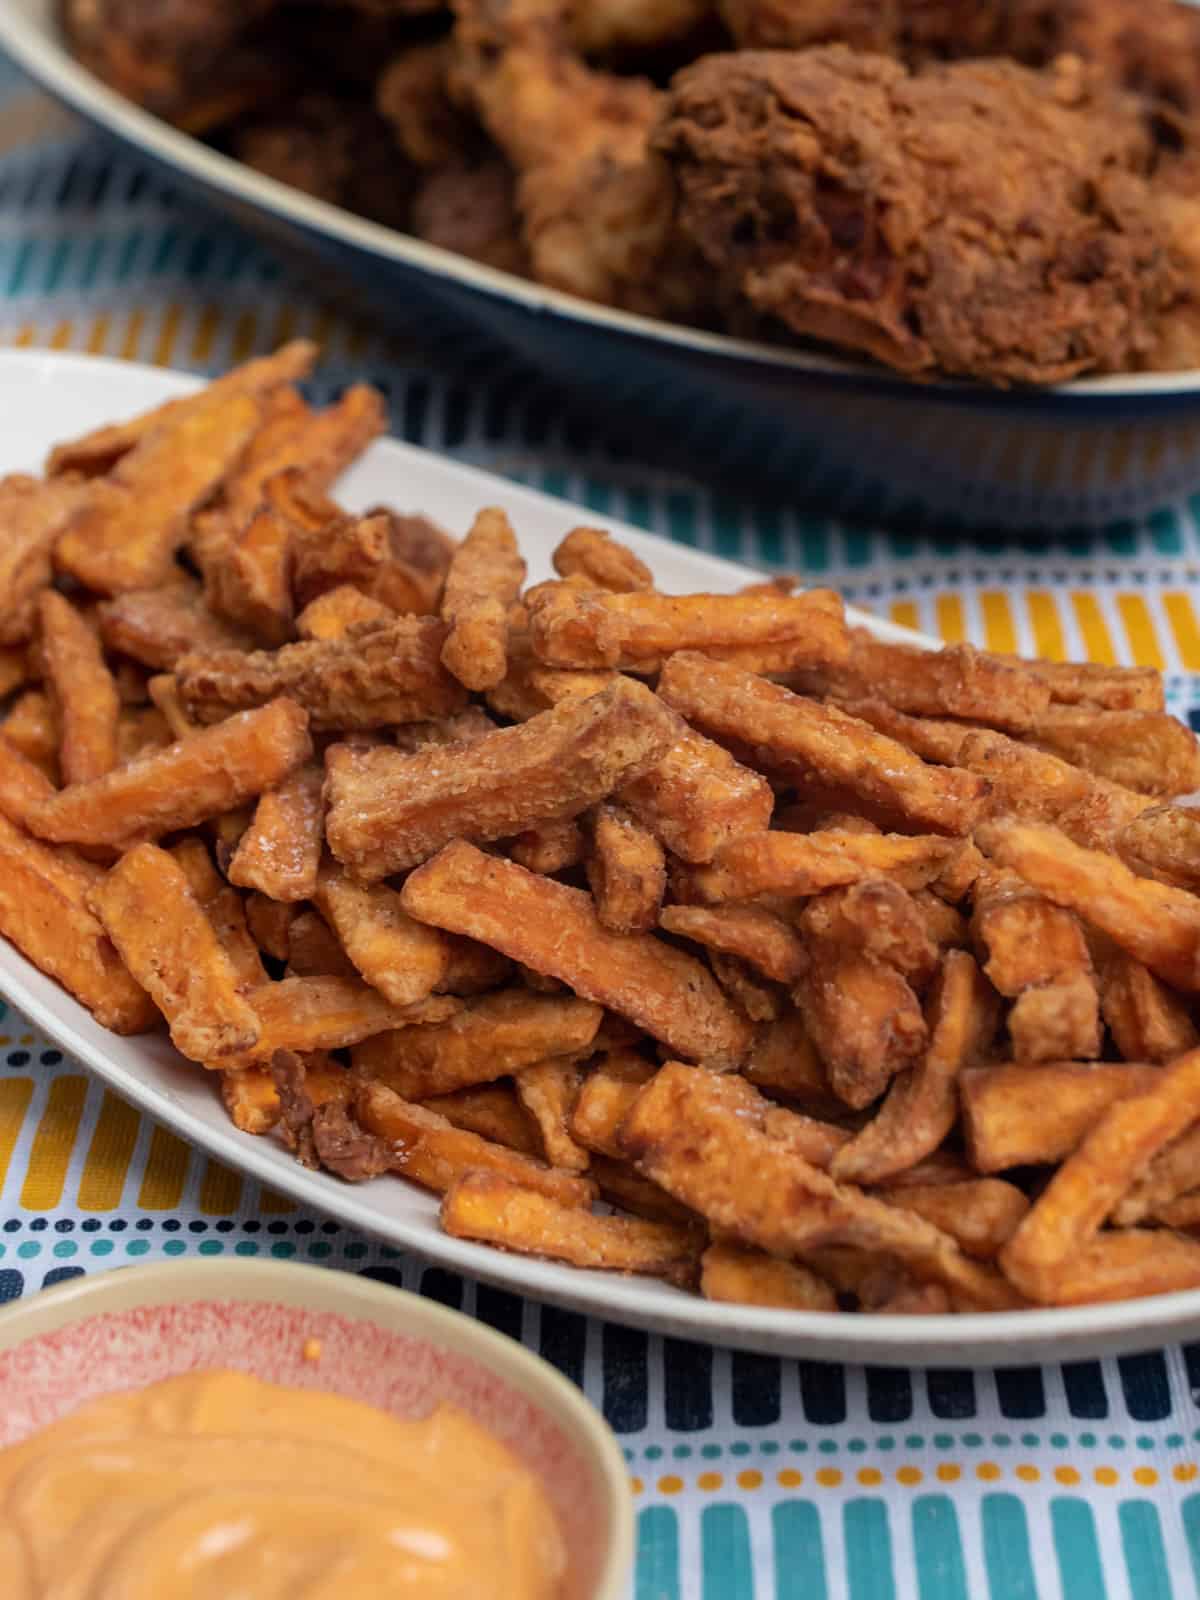 A platter of sweet potato fries.